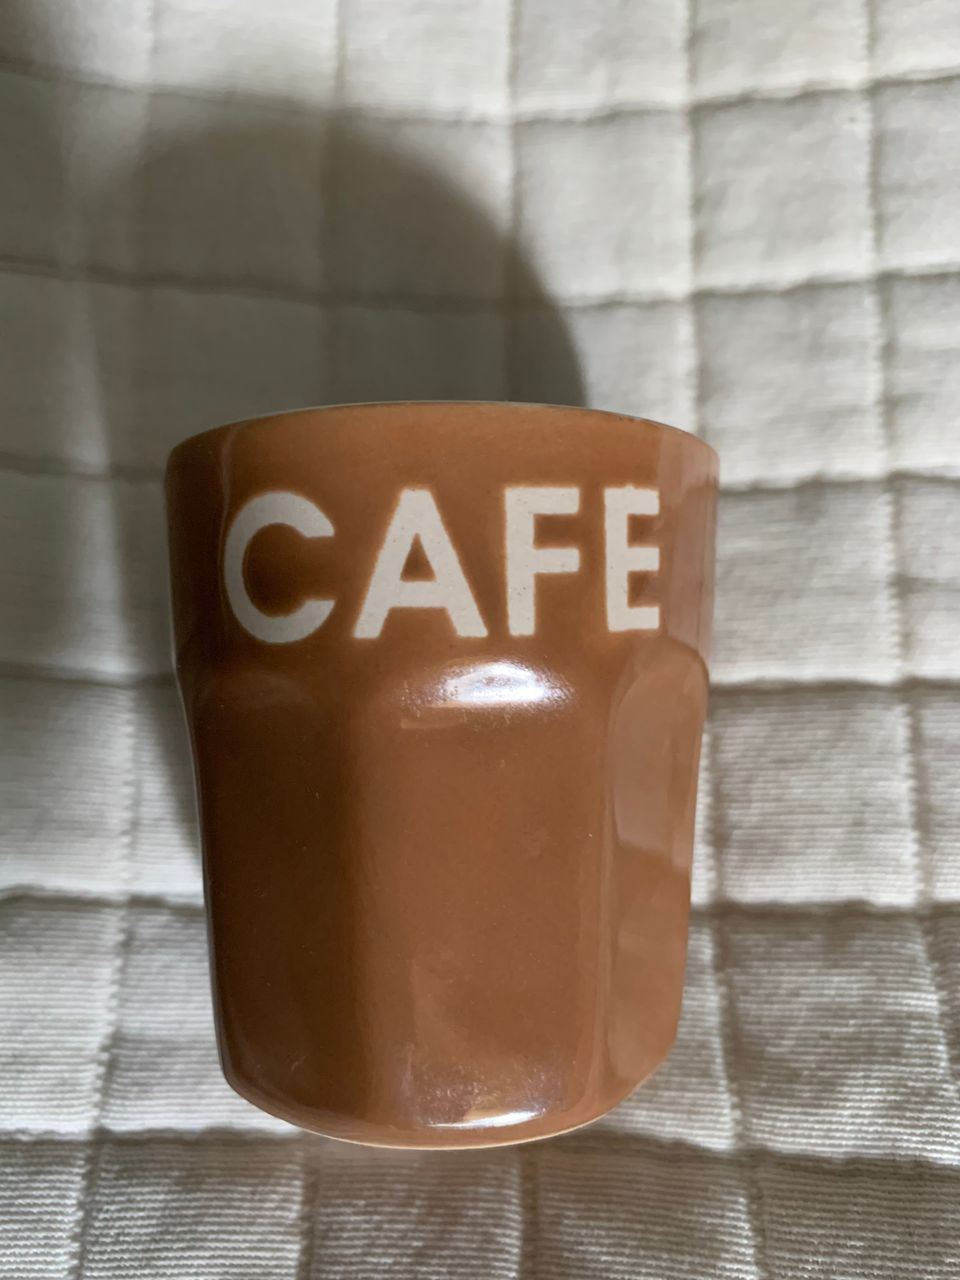 Pieni espresso kuppi cafe-tekstillä